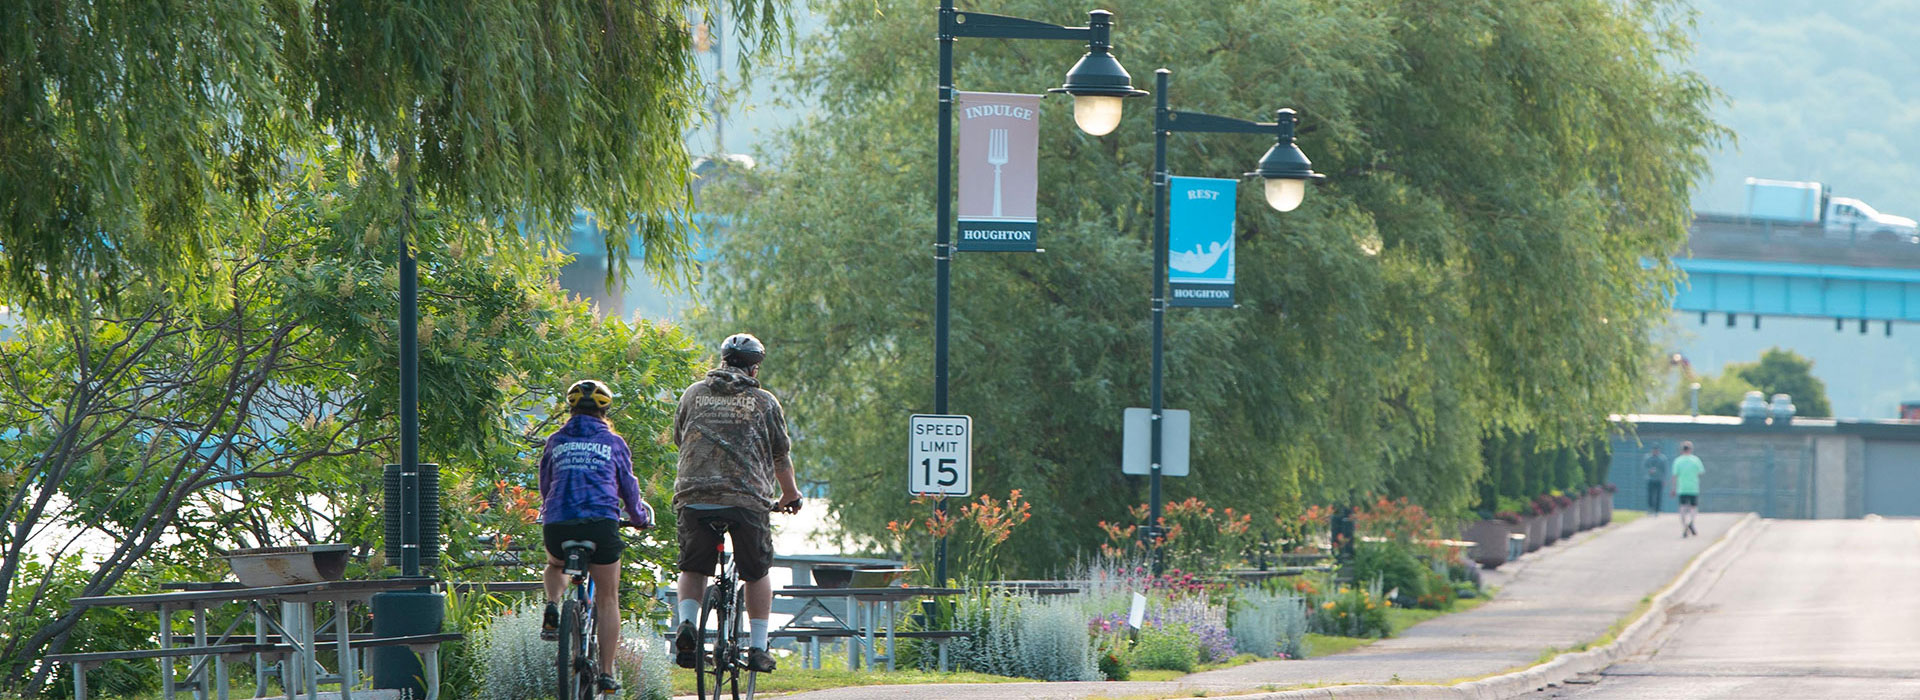 Houghton waterfront paved biking trail